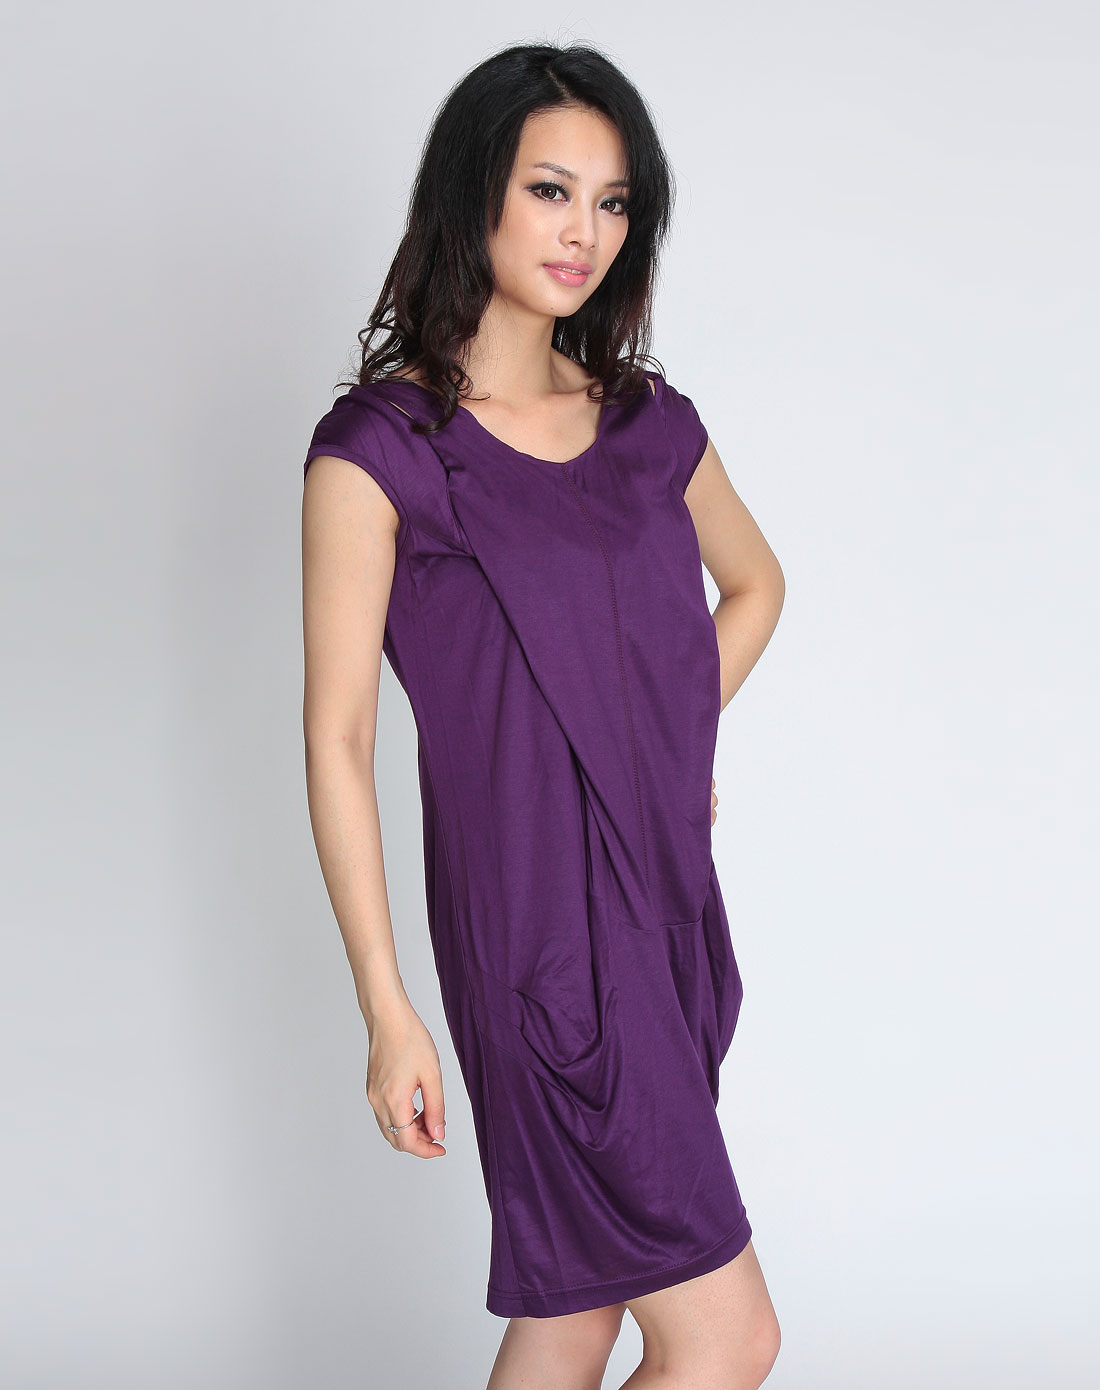 x-moom紫色真丝短袖连衣裙hgaicb371410